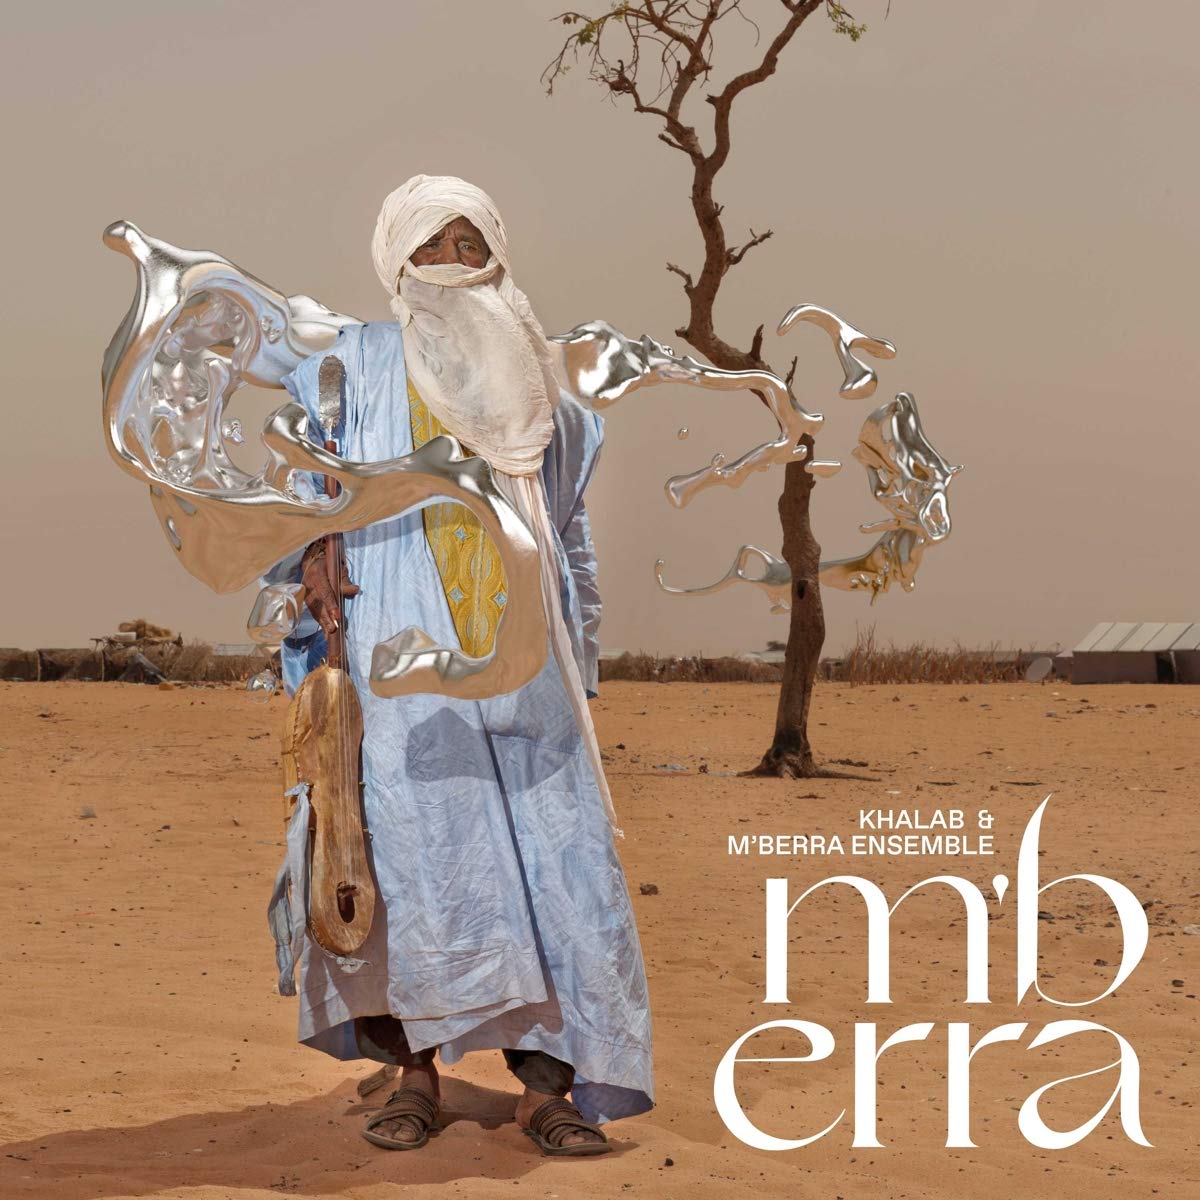 Khalab & M'Berra Ensemble - M'berra